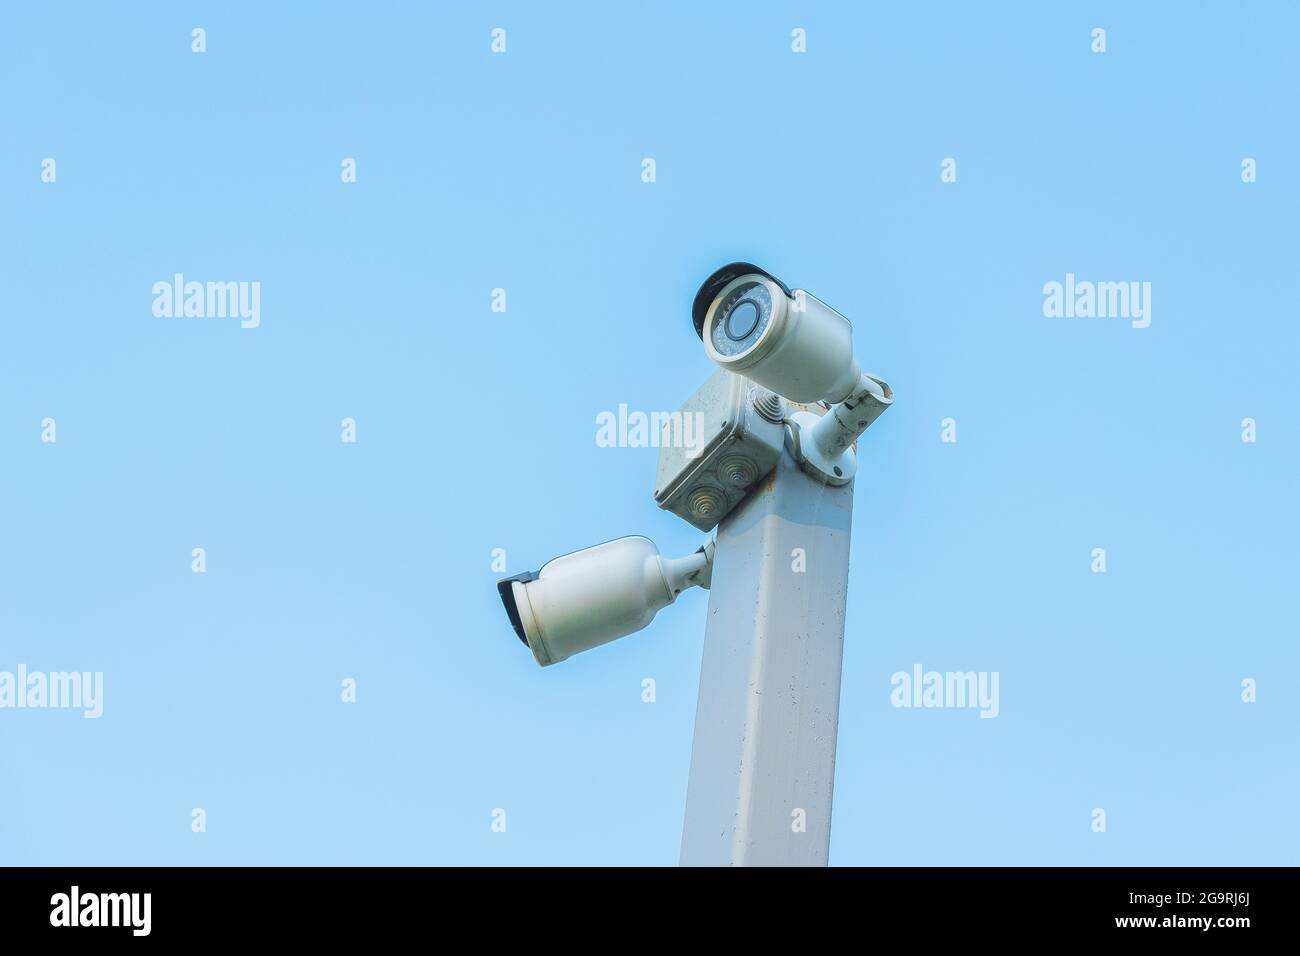 360 Grados De Cámaras De Vigilancia En Un Poste, El Cielo Azul